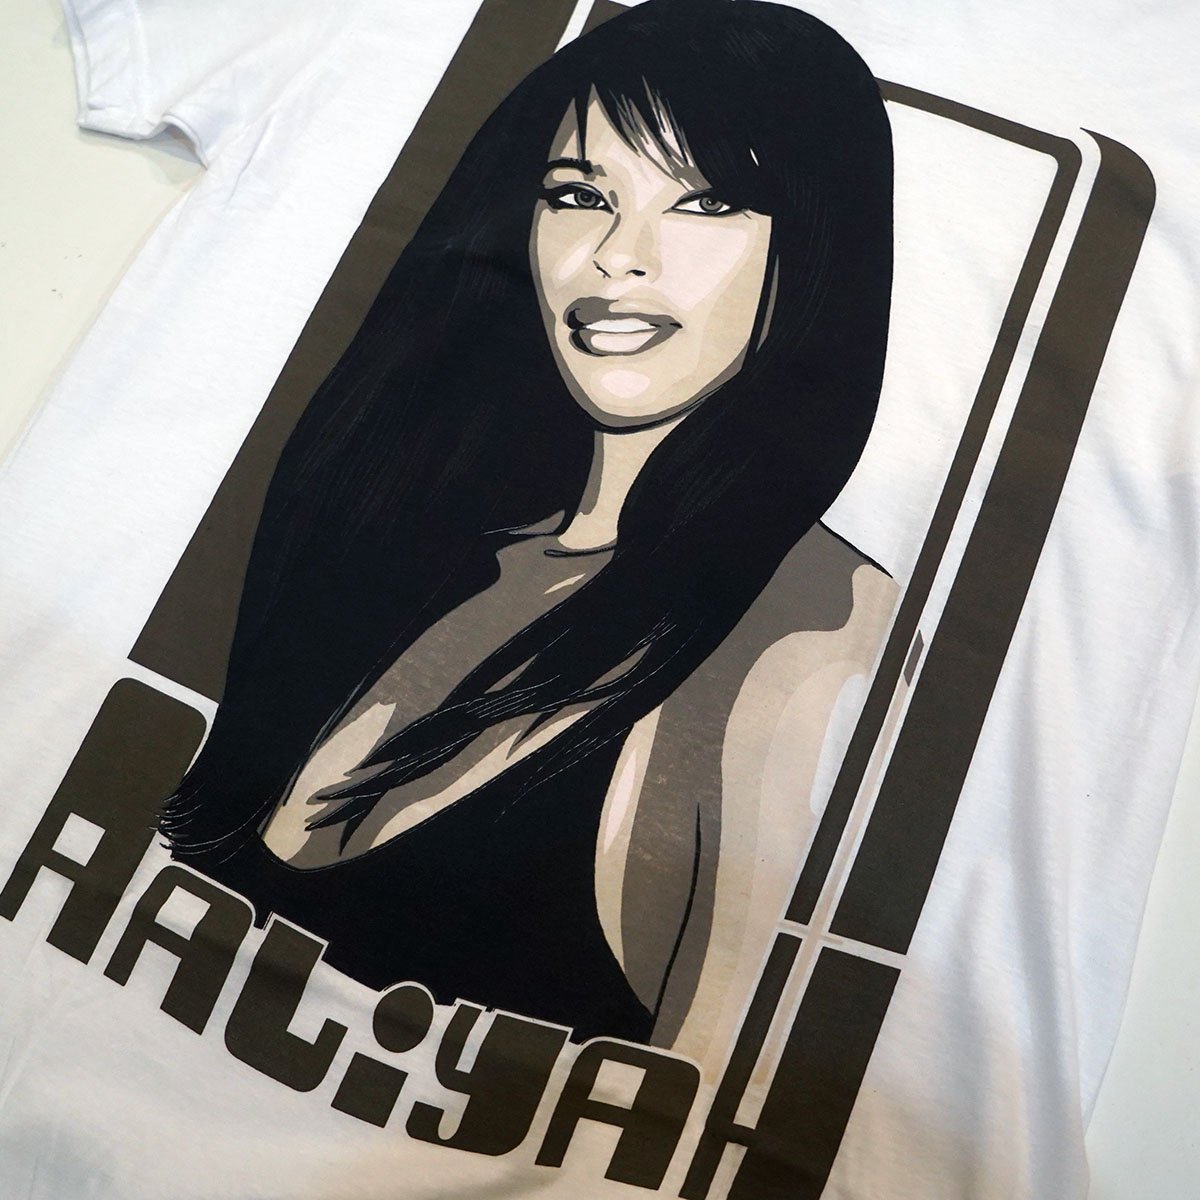 Hip HOP(ヒップホップ) R&BTシャツの取り扱い 販売- Aaliyah( アリーヤ) Tシャツ 取り扱い店舗- Fedup 大阪 Osaka  なんば